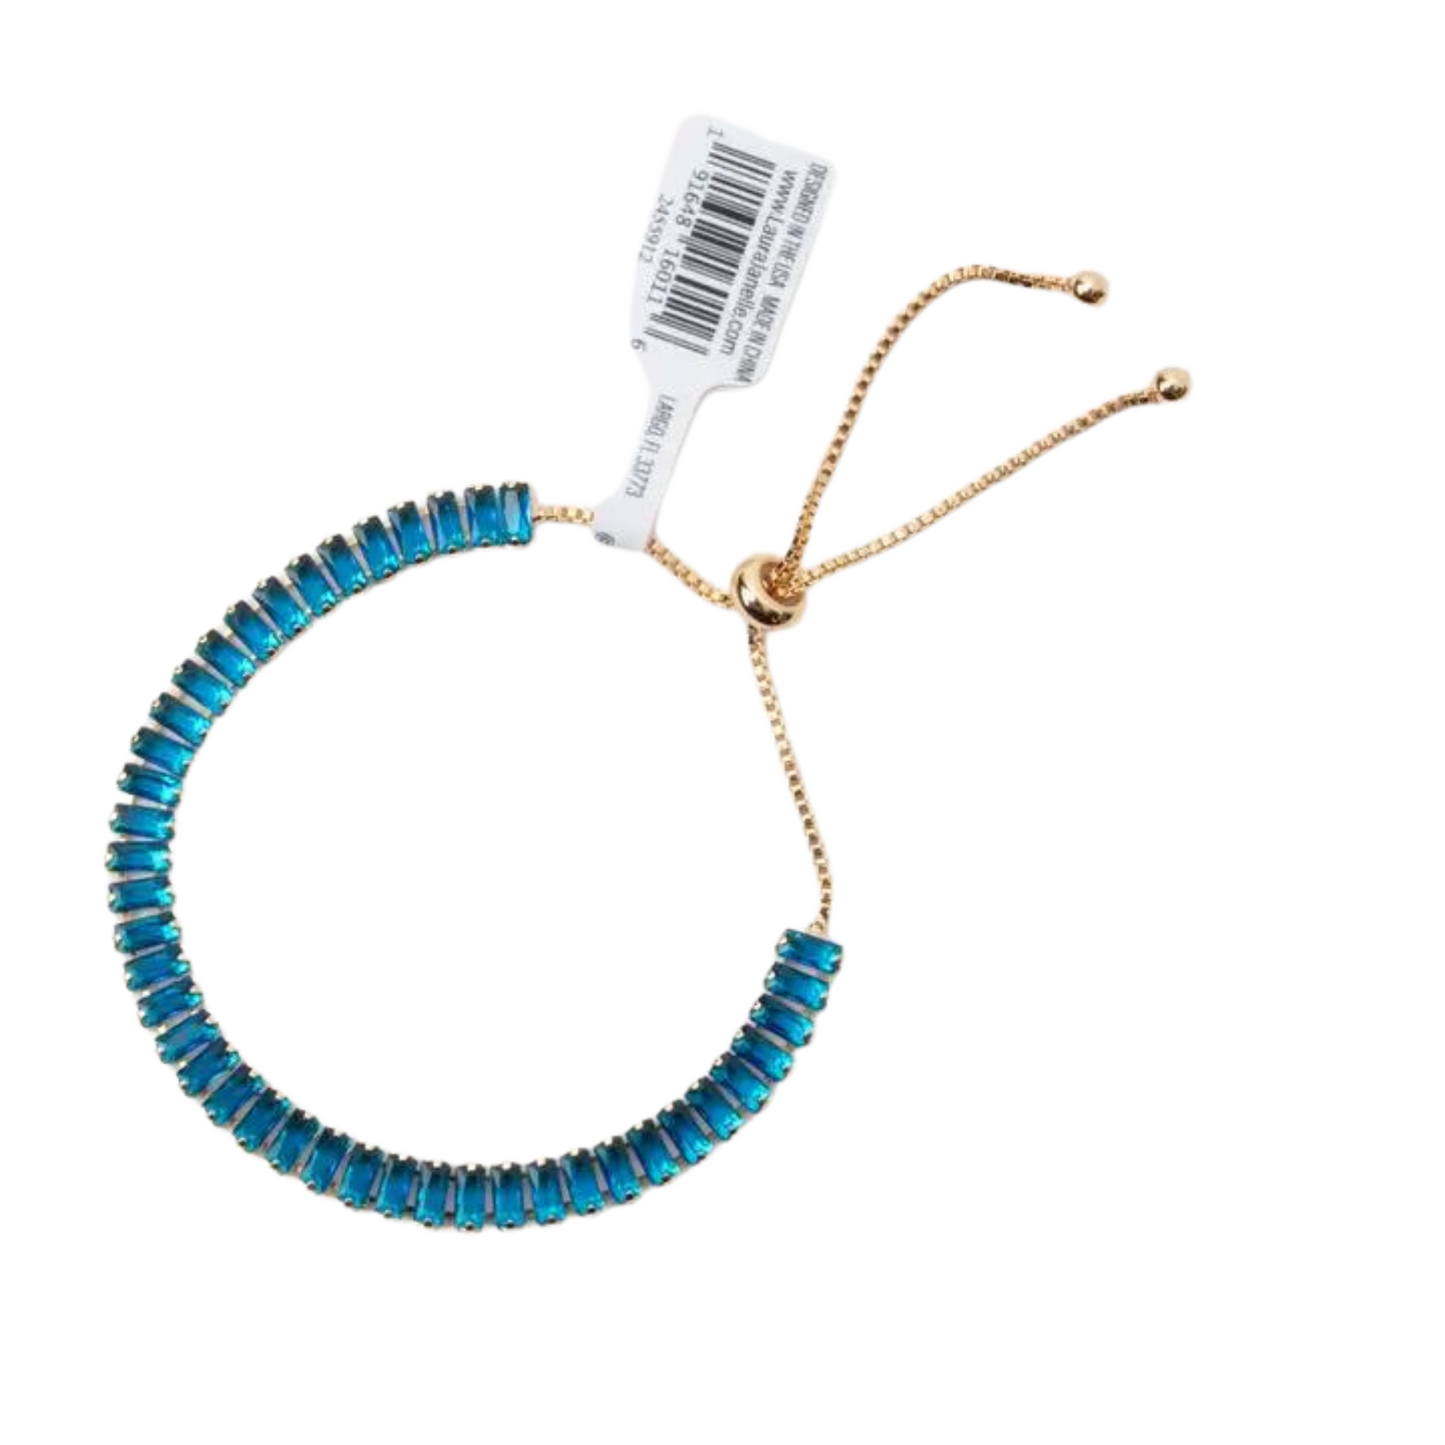 14K gold plated adjustable tennis bracelet in Saphire